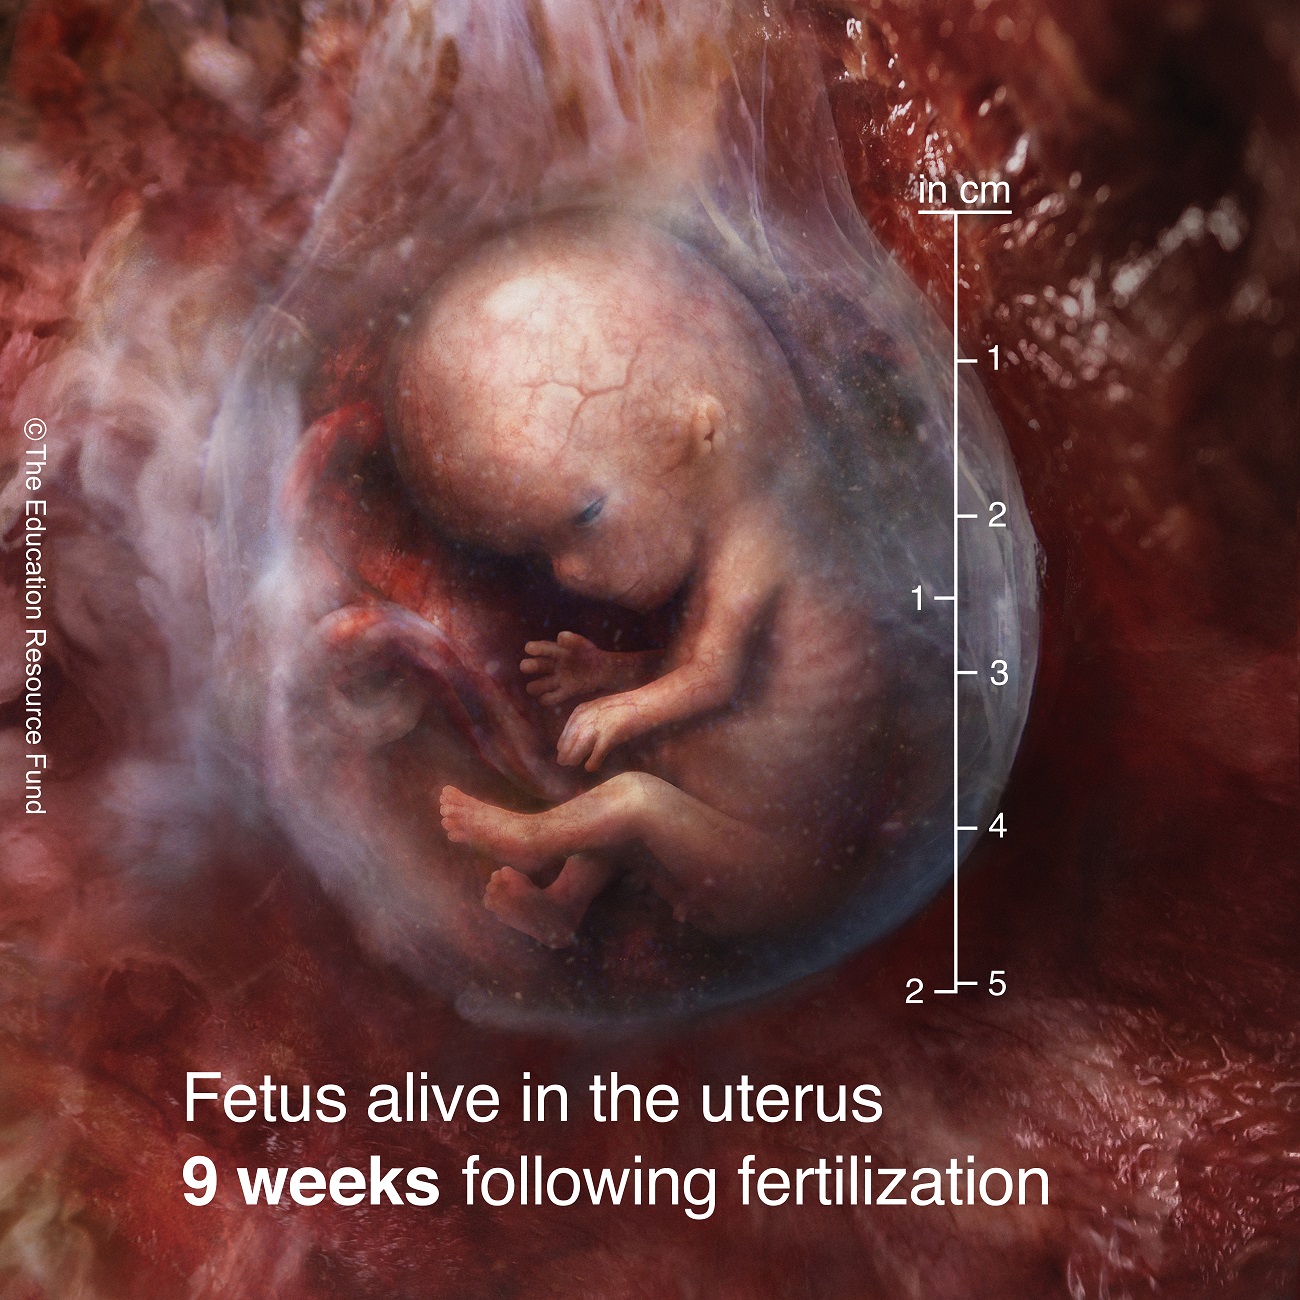 Fetus alive in the uterus 9 weeks following fertilization